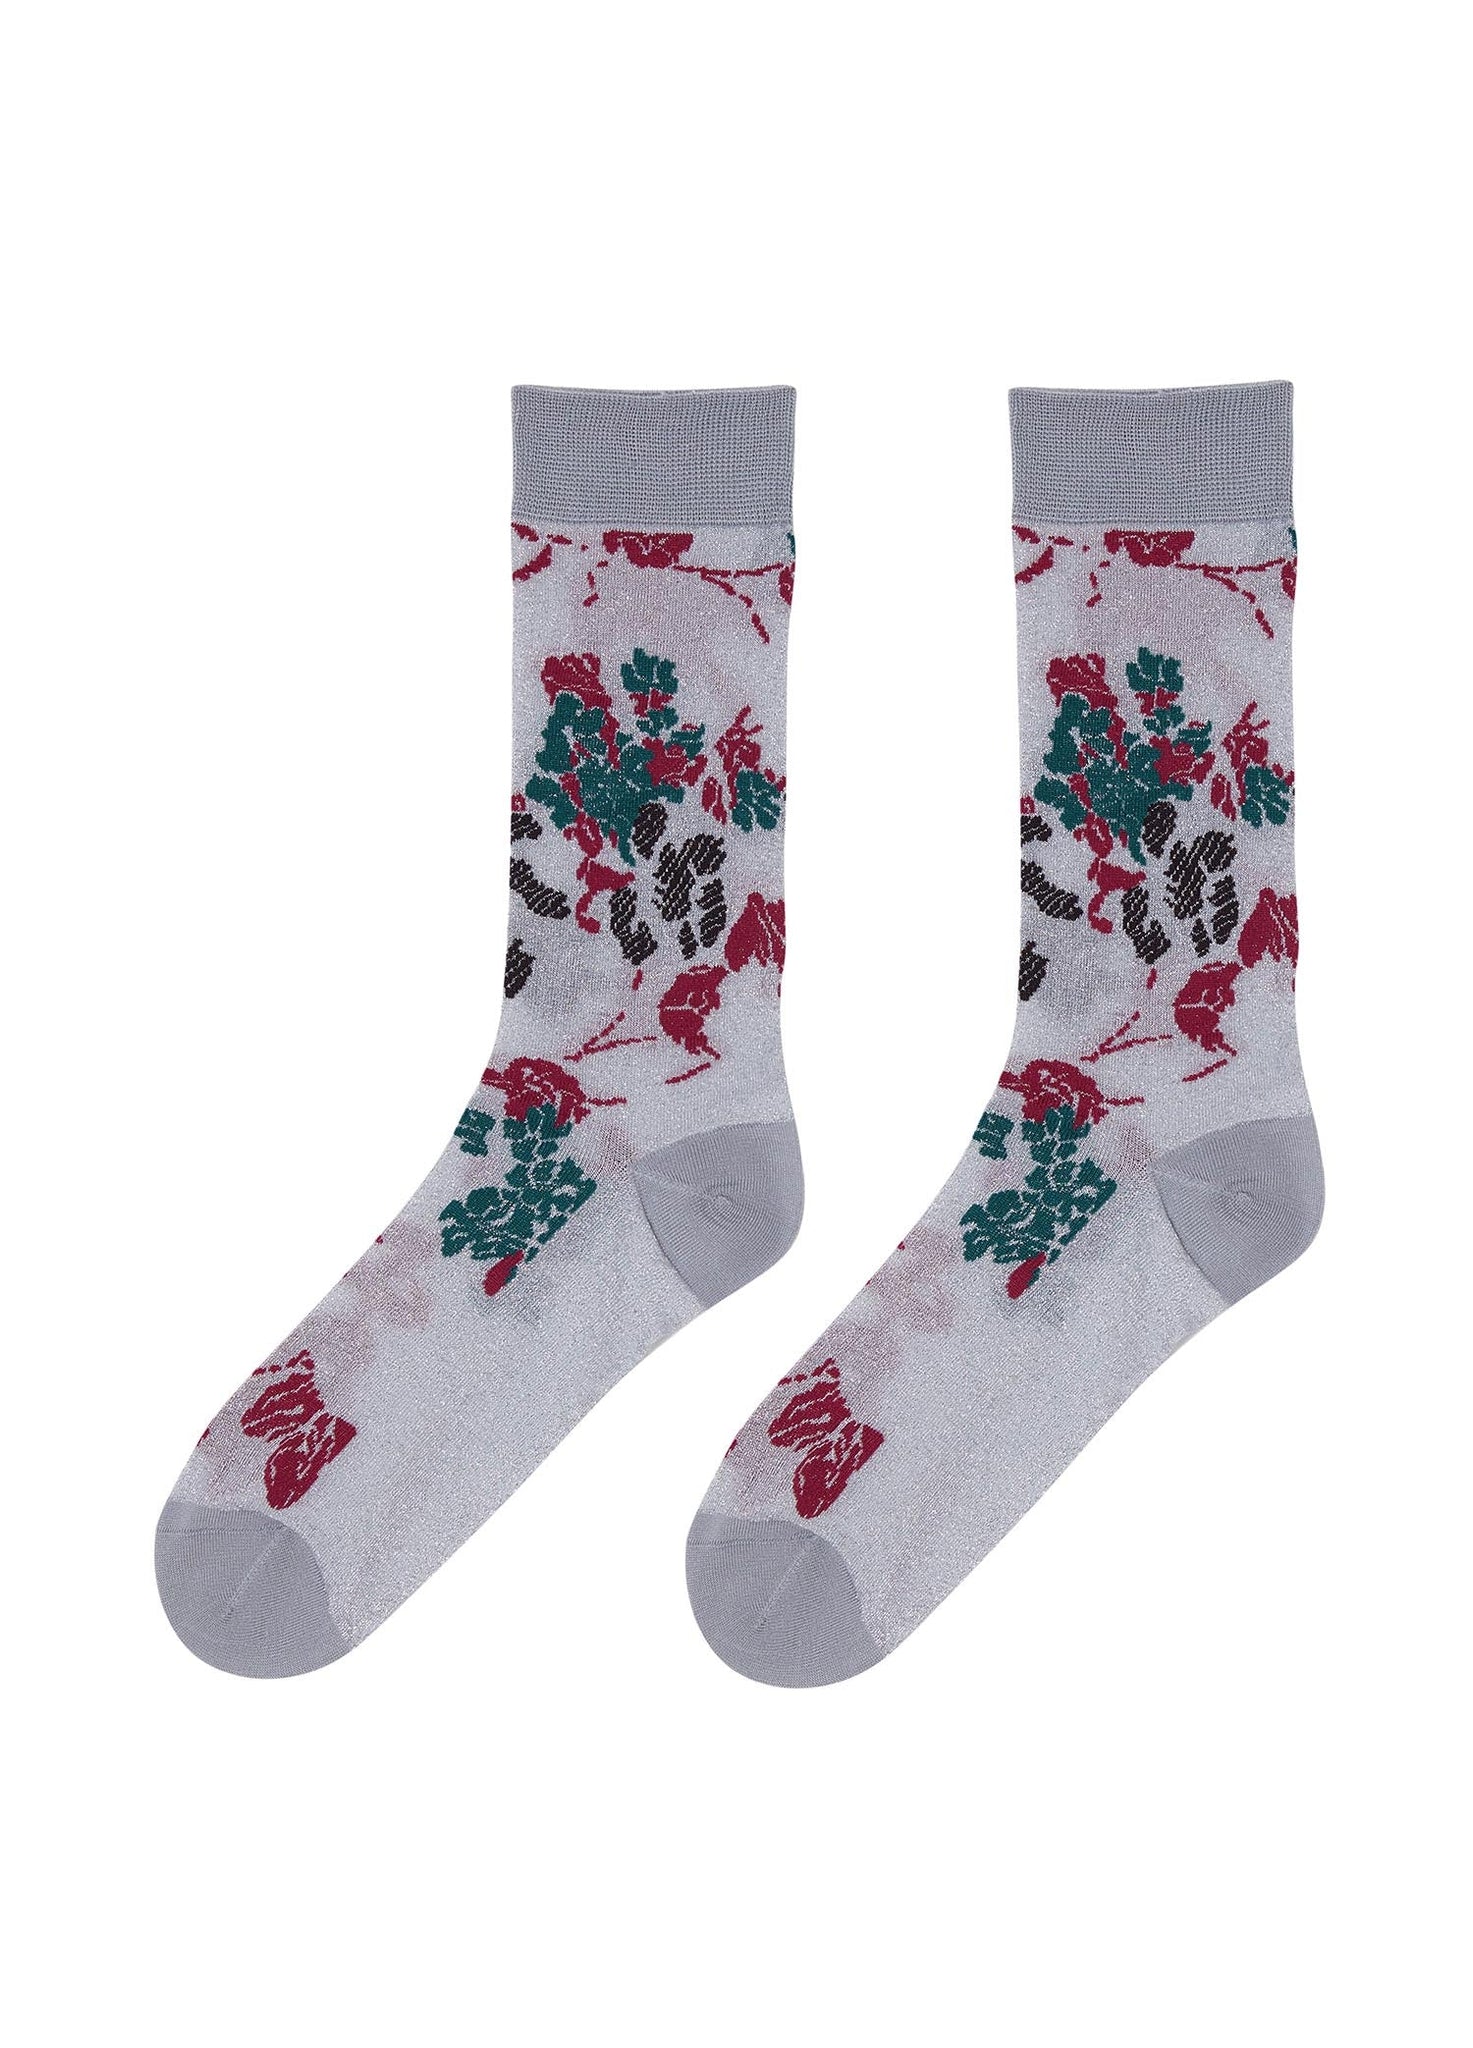 Socks / JNBY Colorful Floral Jacquard Socks